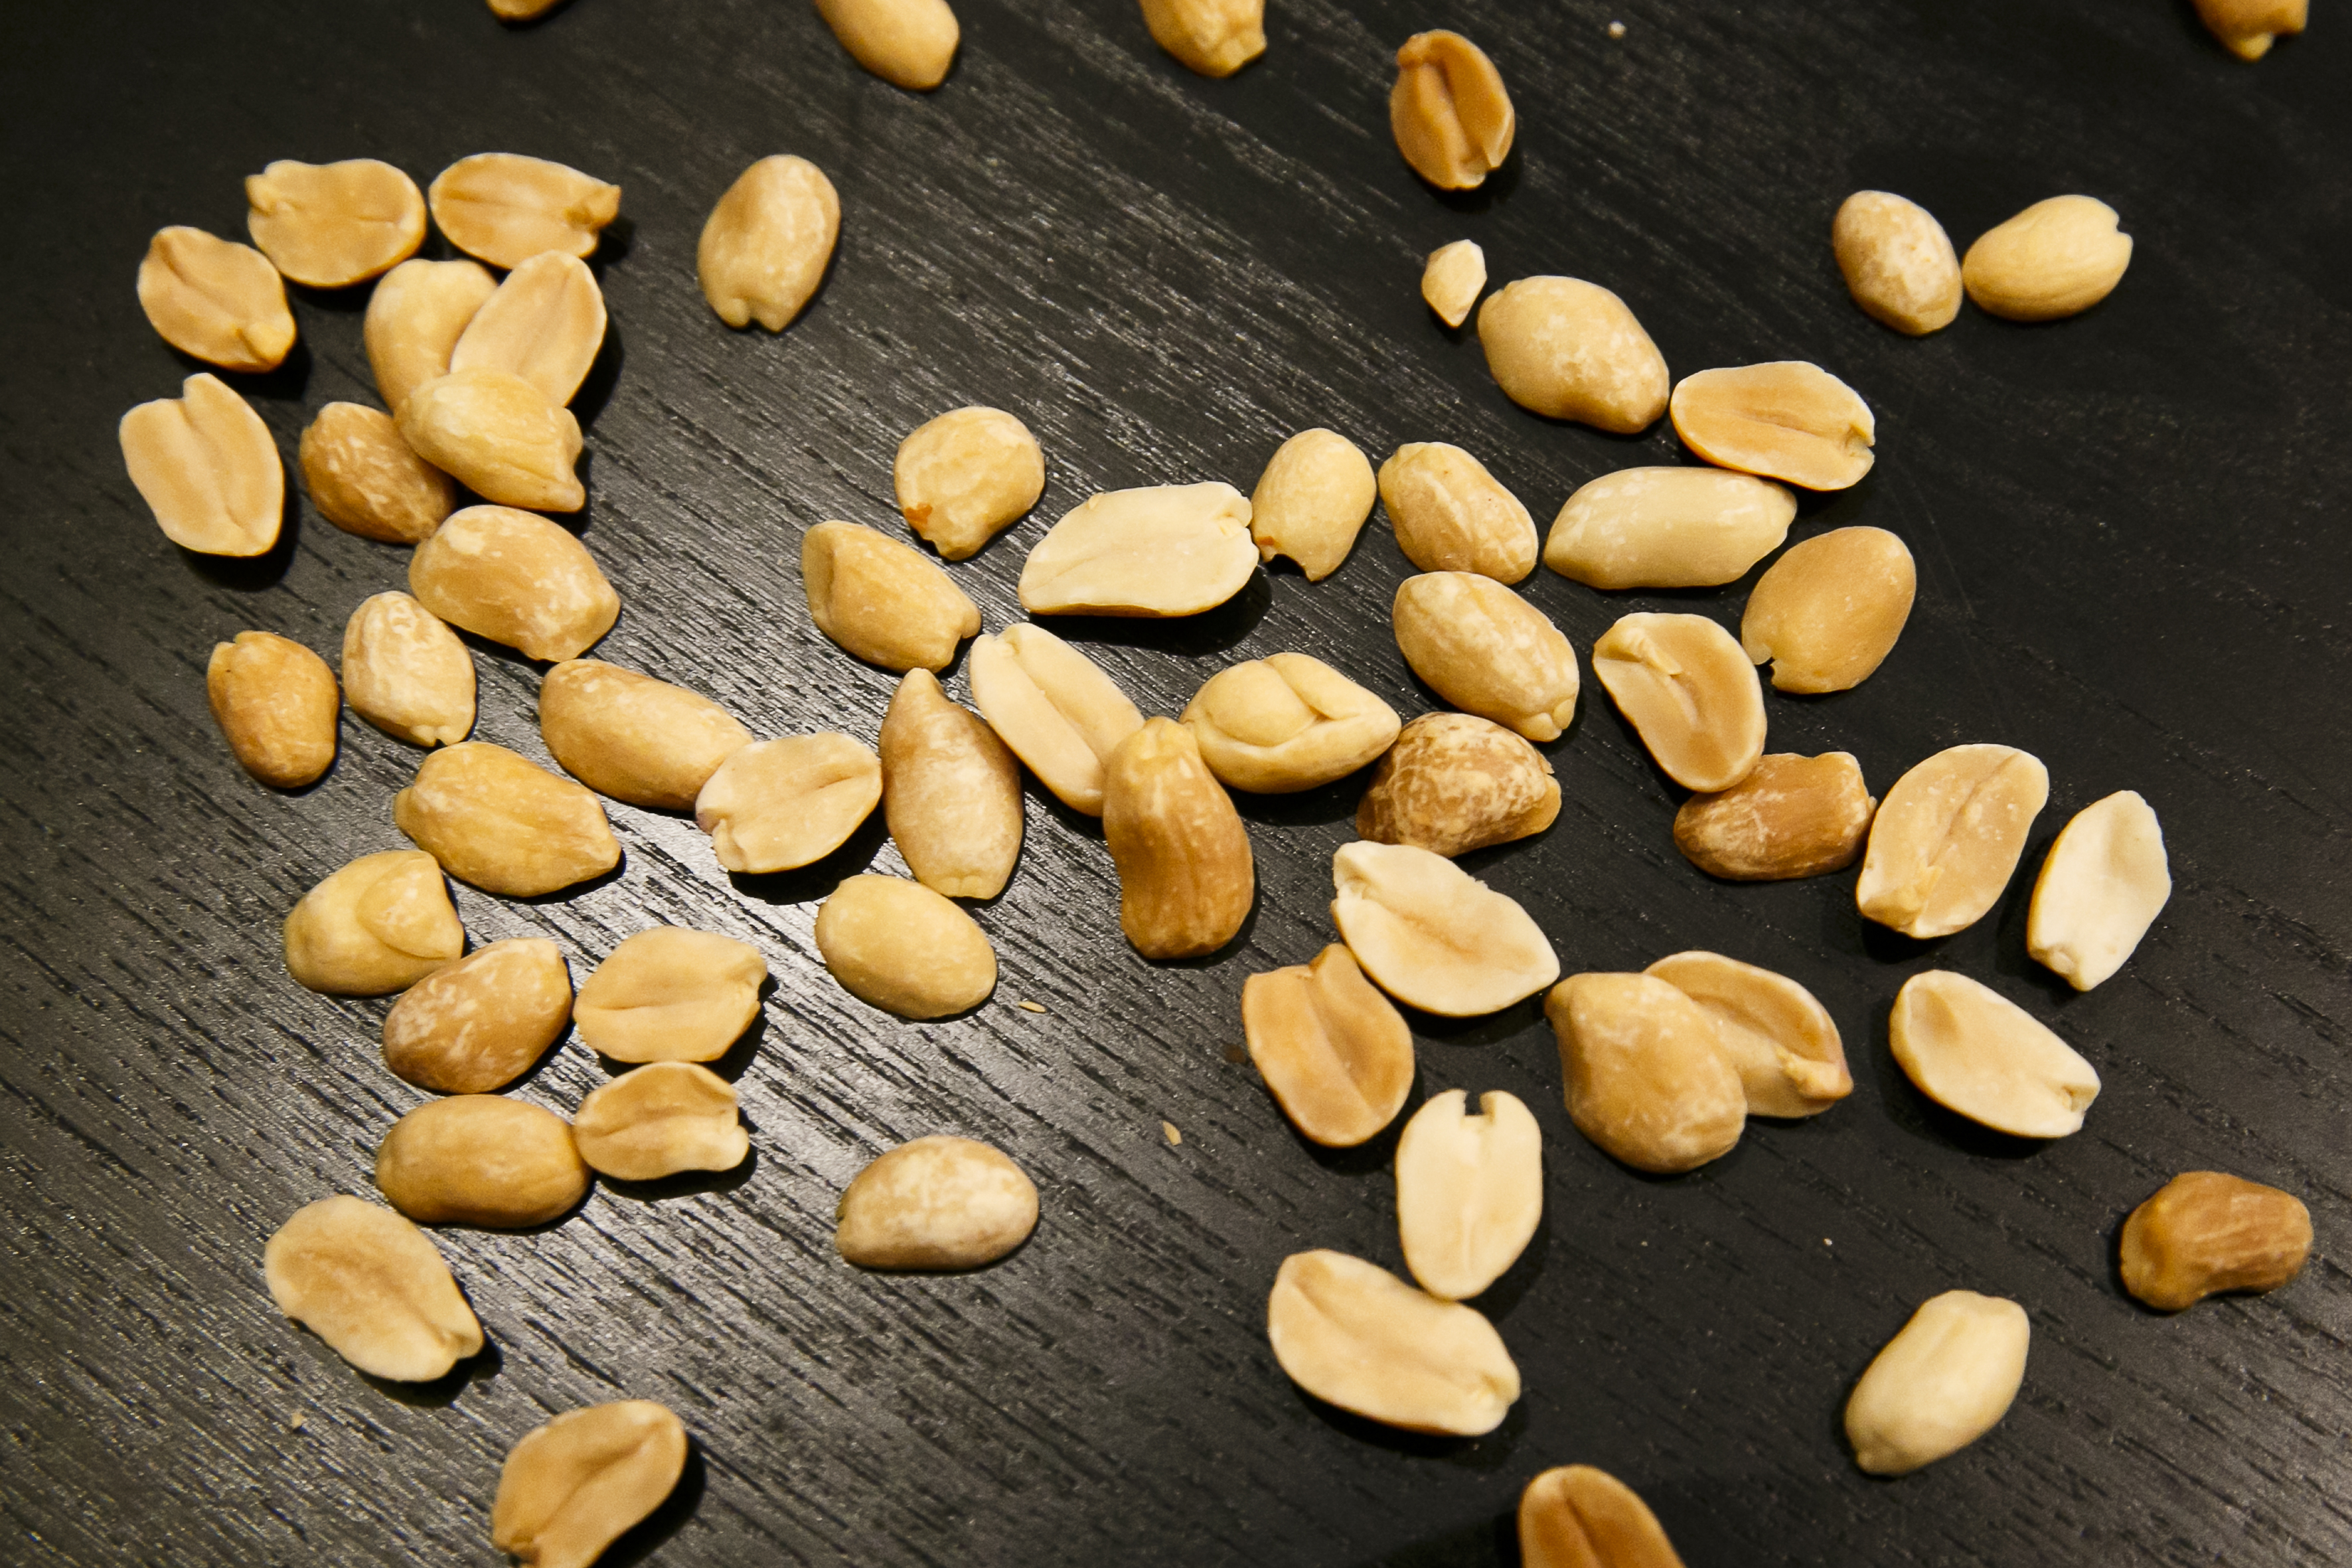 Nötter kan ge färre kalorier än vi trott.